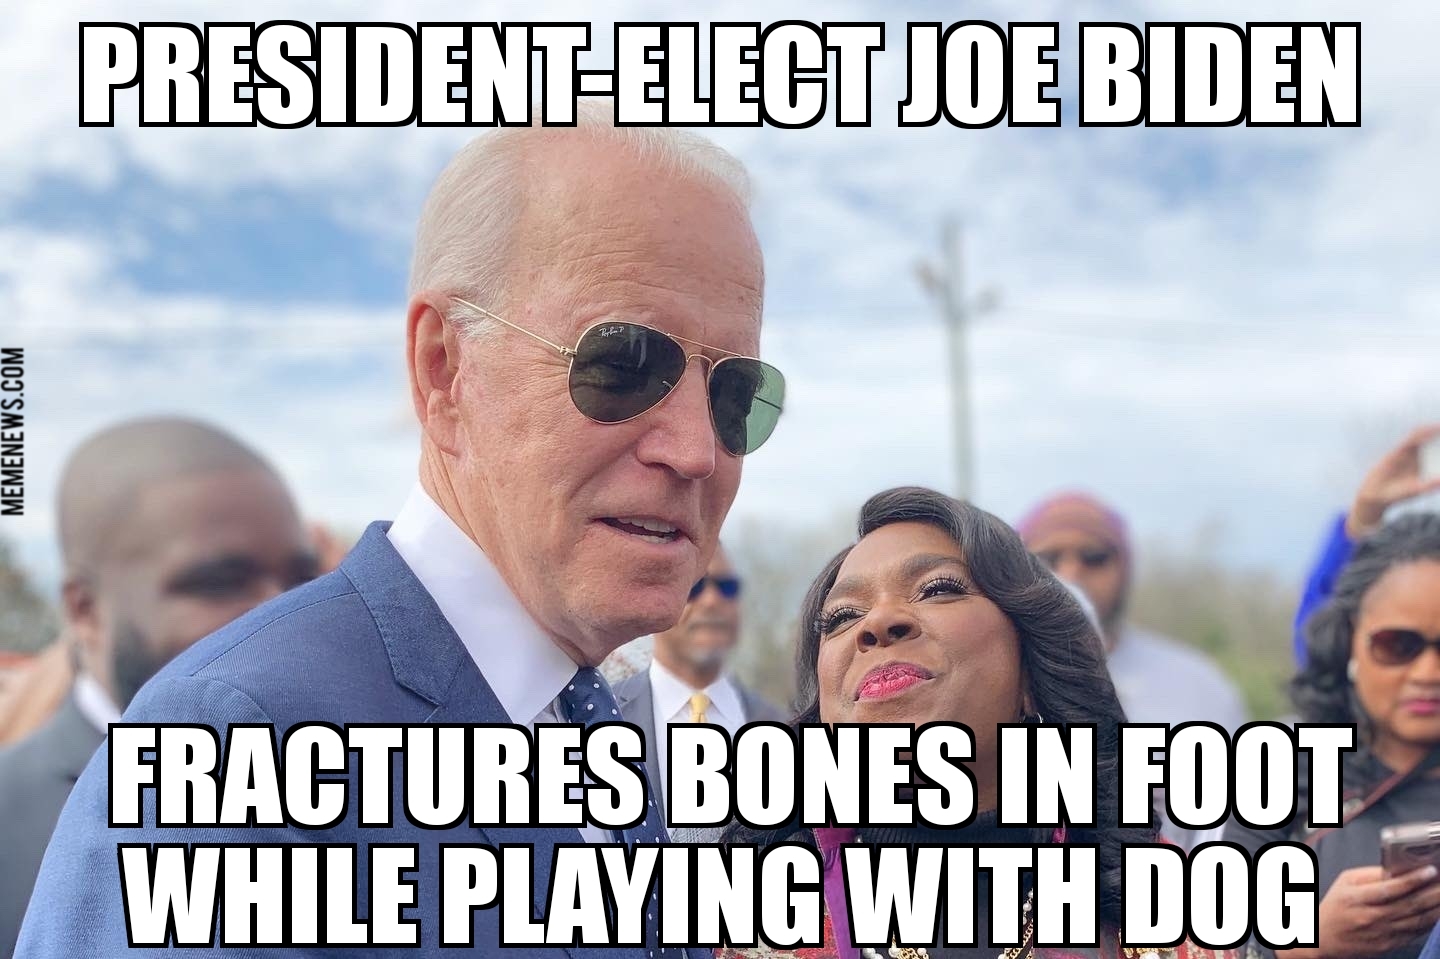 Joe Biden fractures foot